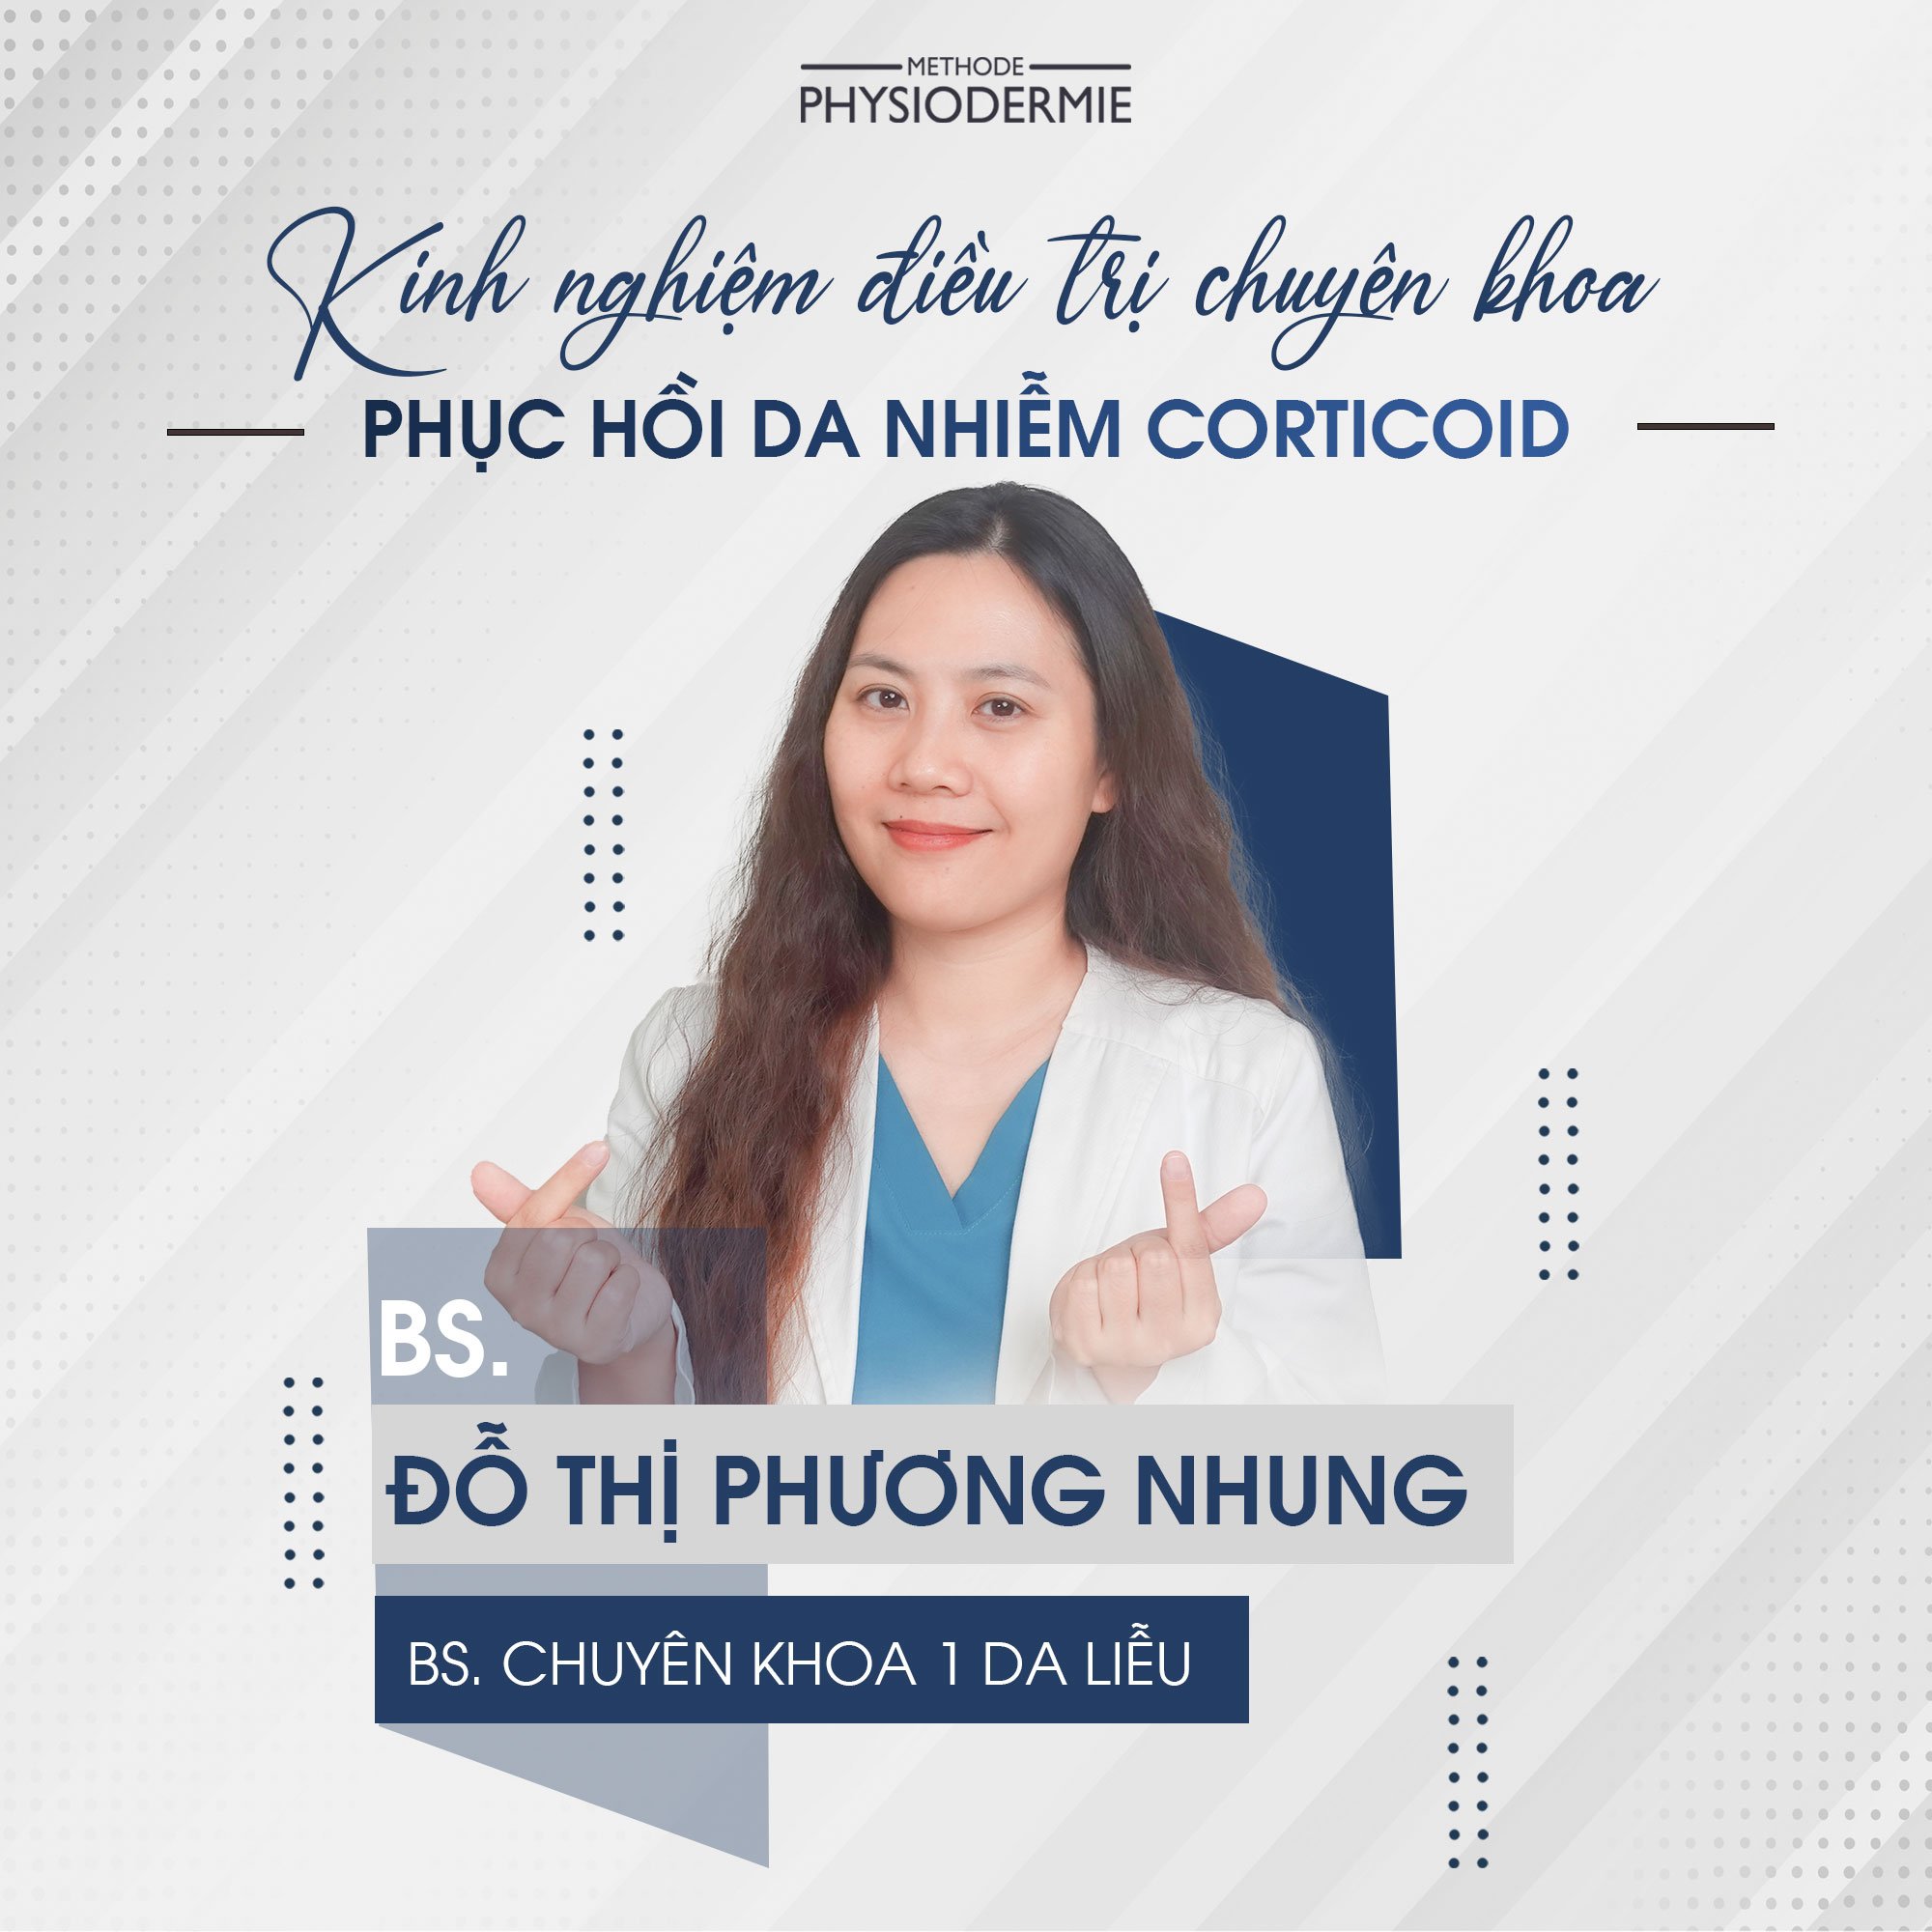 Bs. Đỗ Thị Phương Nhung - BS. CK1 Da Liễu hiện đang quản lý phòng khám da liễu Thăng Long tại Hà Nội